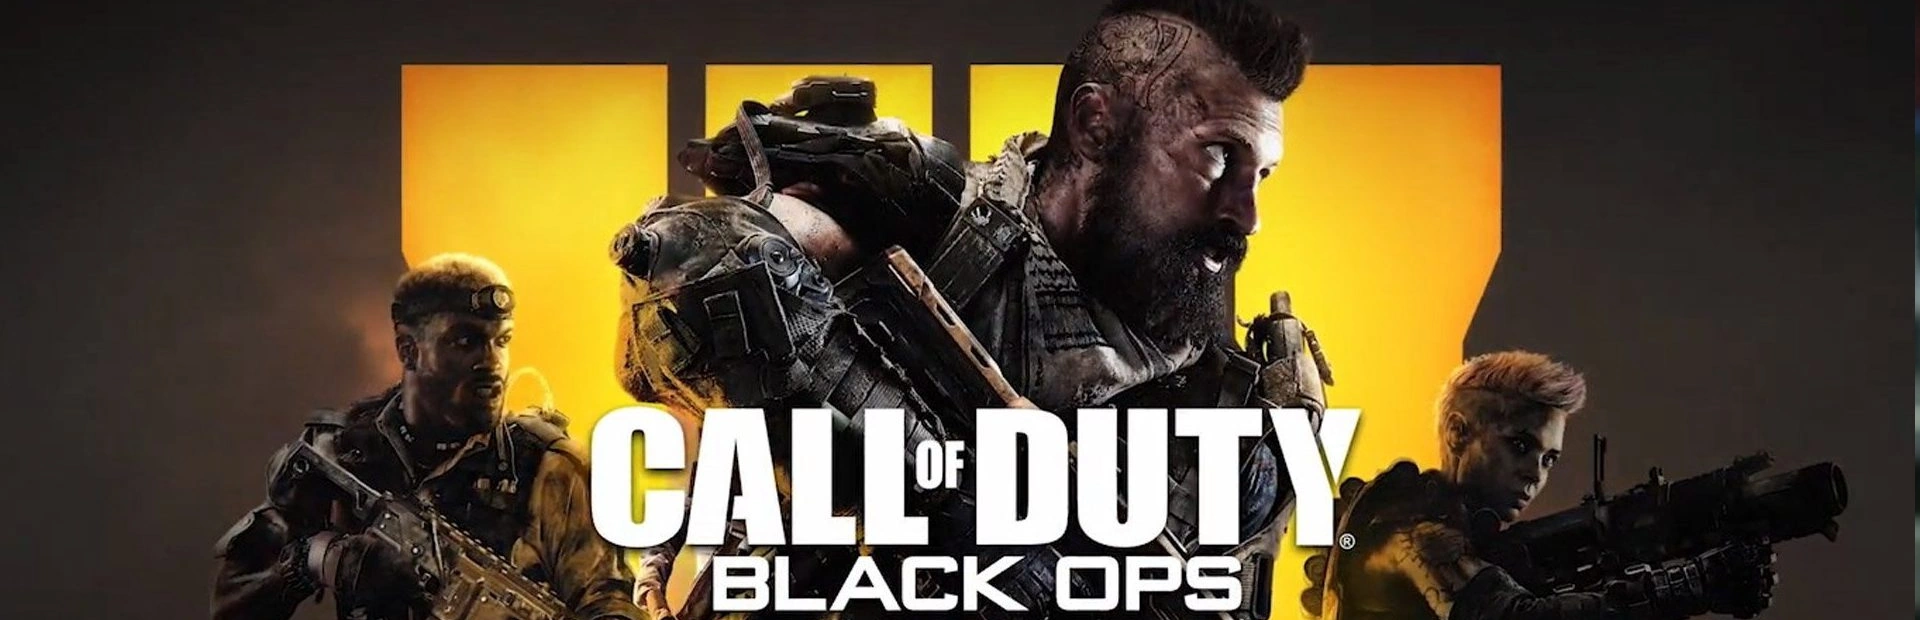 دانلود بازی Call of Duty: Black Ops 4 برای pc | گیمباتو